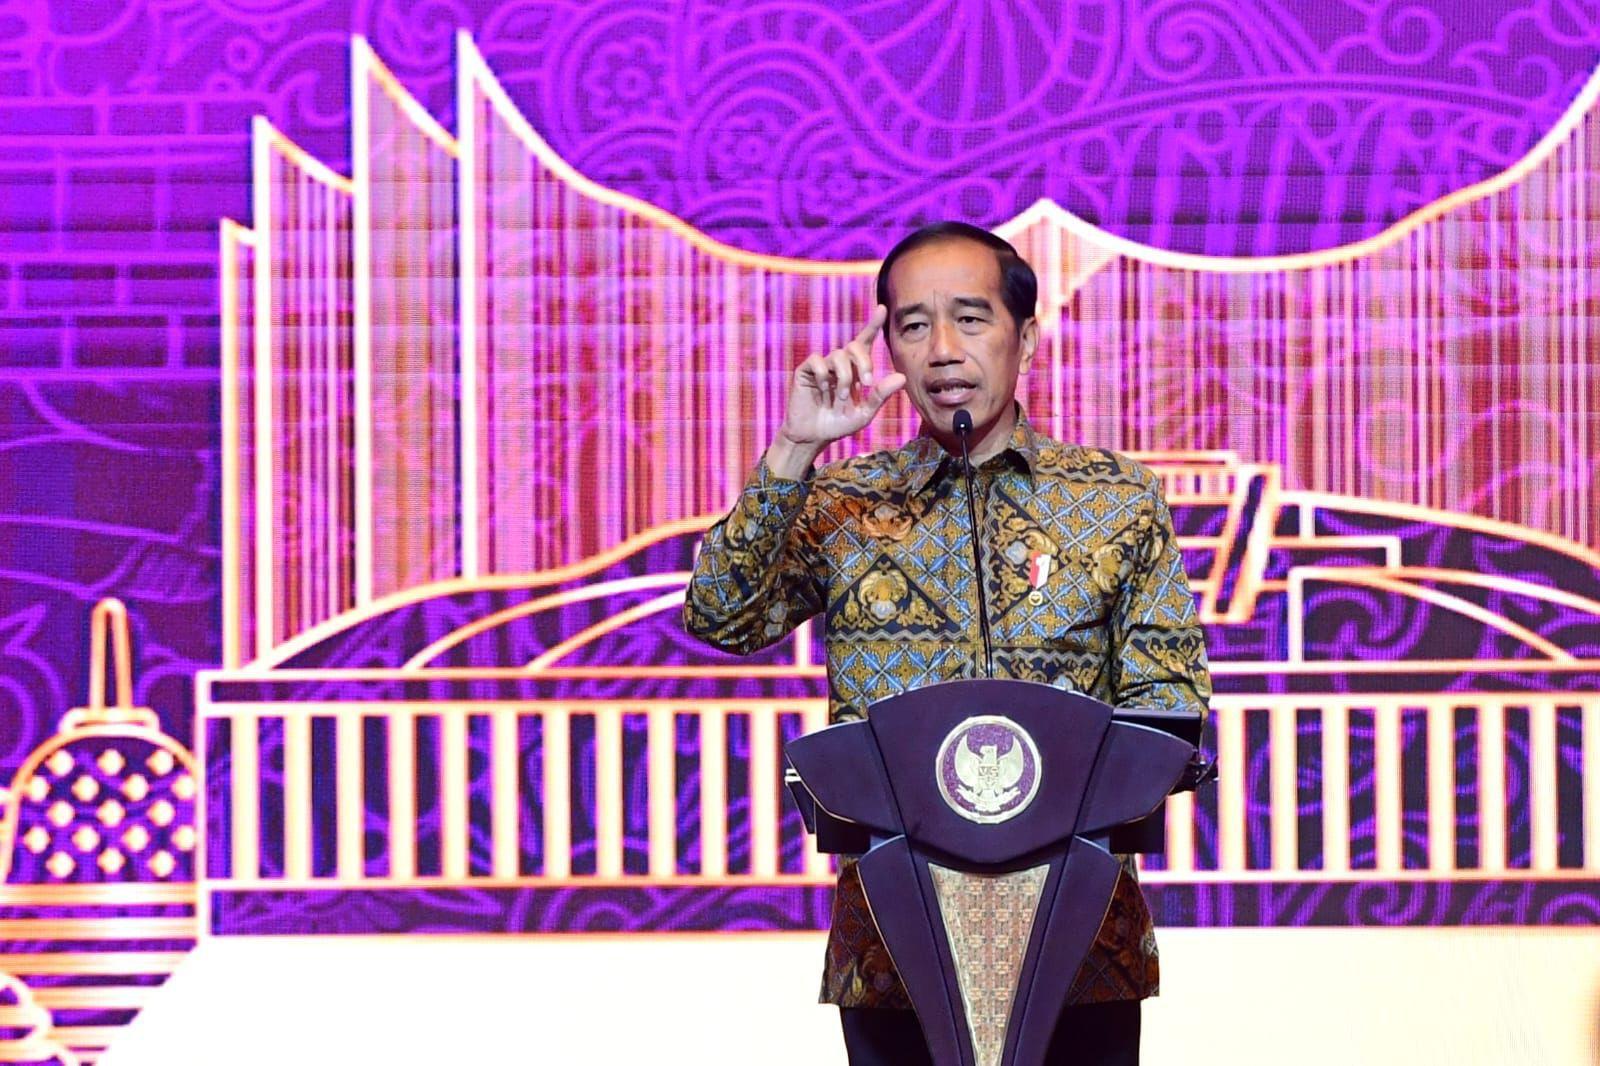 Fenomena Goreng Saham, Jokowi Tak Ingin Rakyat Menangis Seperti Kasus Indosurya hingga Jiwasraya